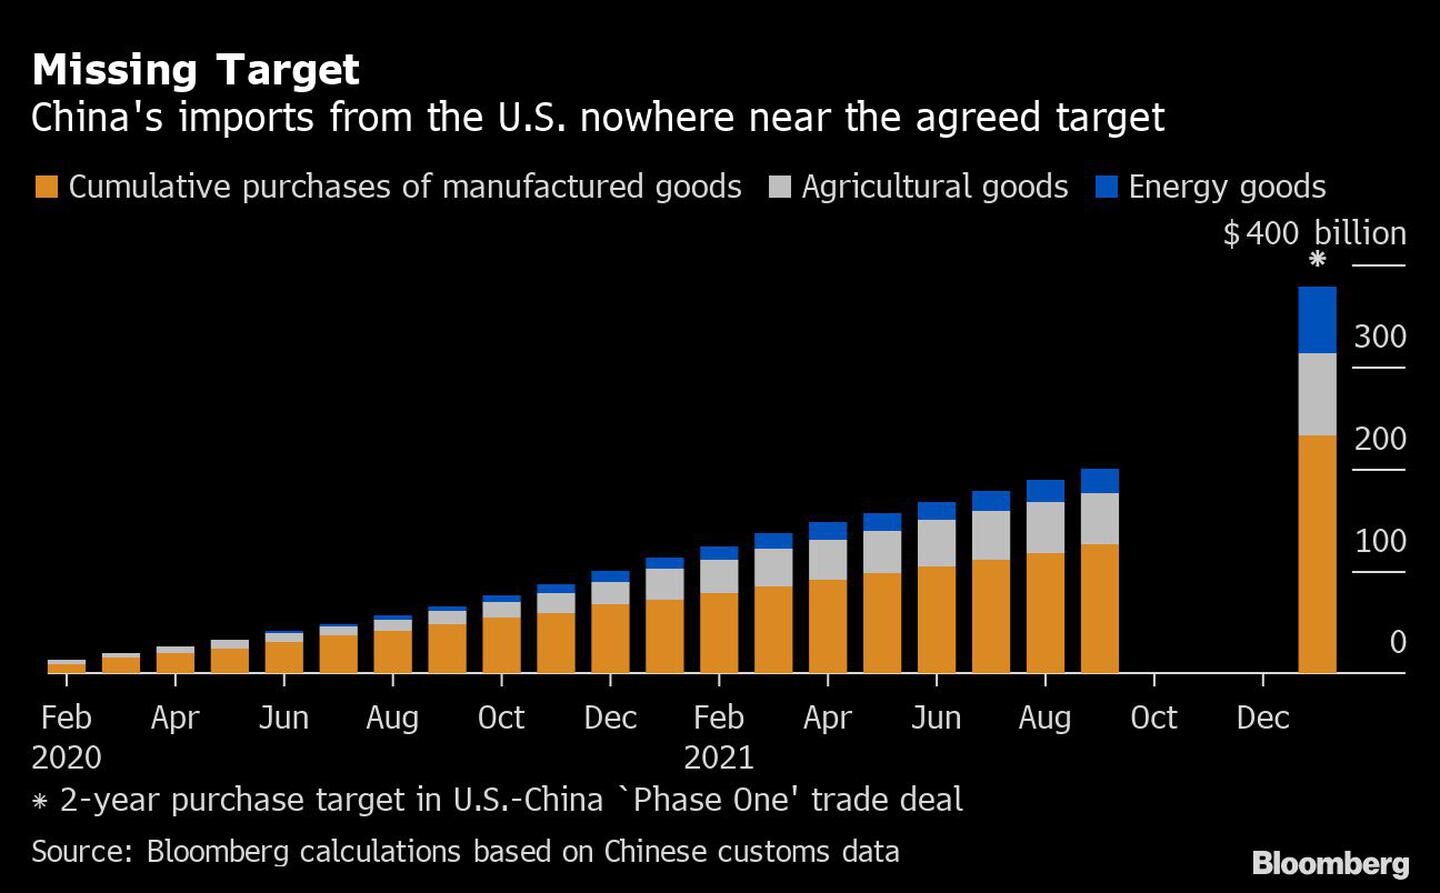 Objetivo incumplido
Las importaciones de China desde Estados Unidos no se acercan al objetivo acordado
Naranja: compras acumuladas de productos manufacturados
Gris: Productos agrícolas
Azul: Productos energéticos